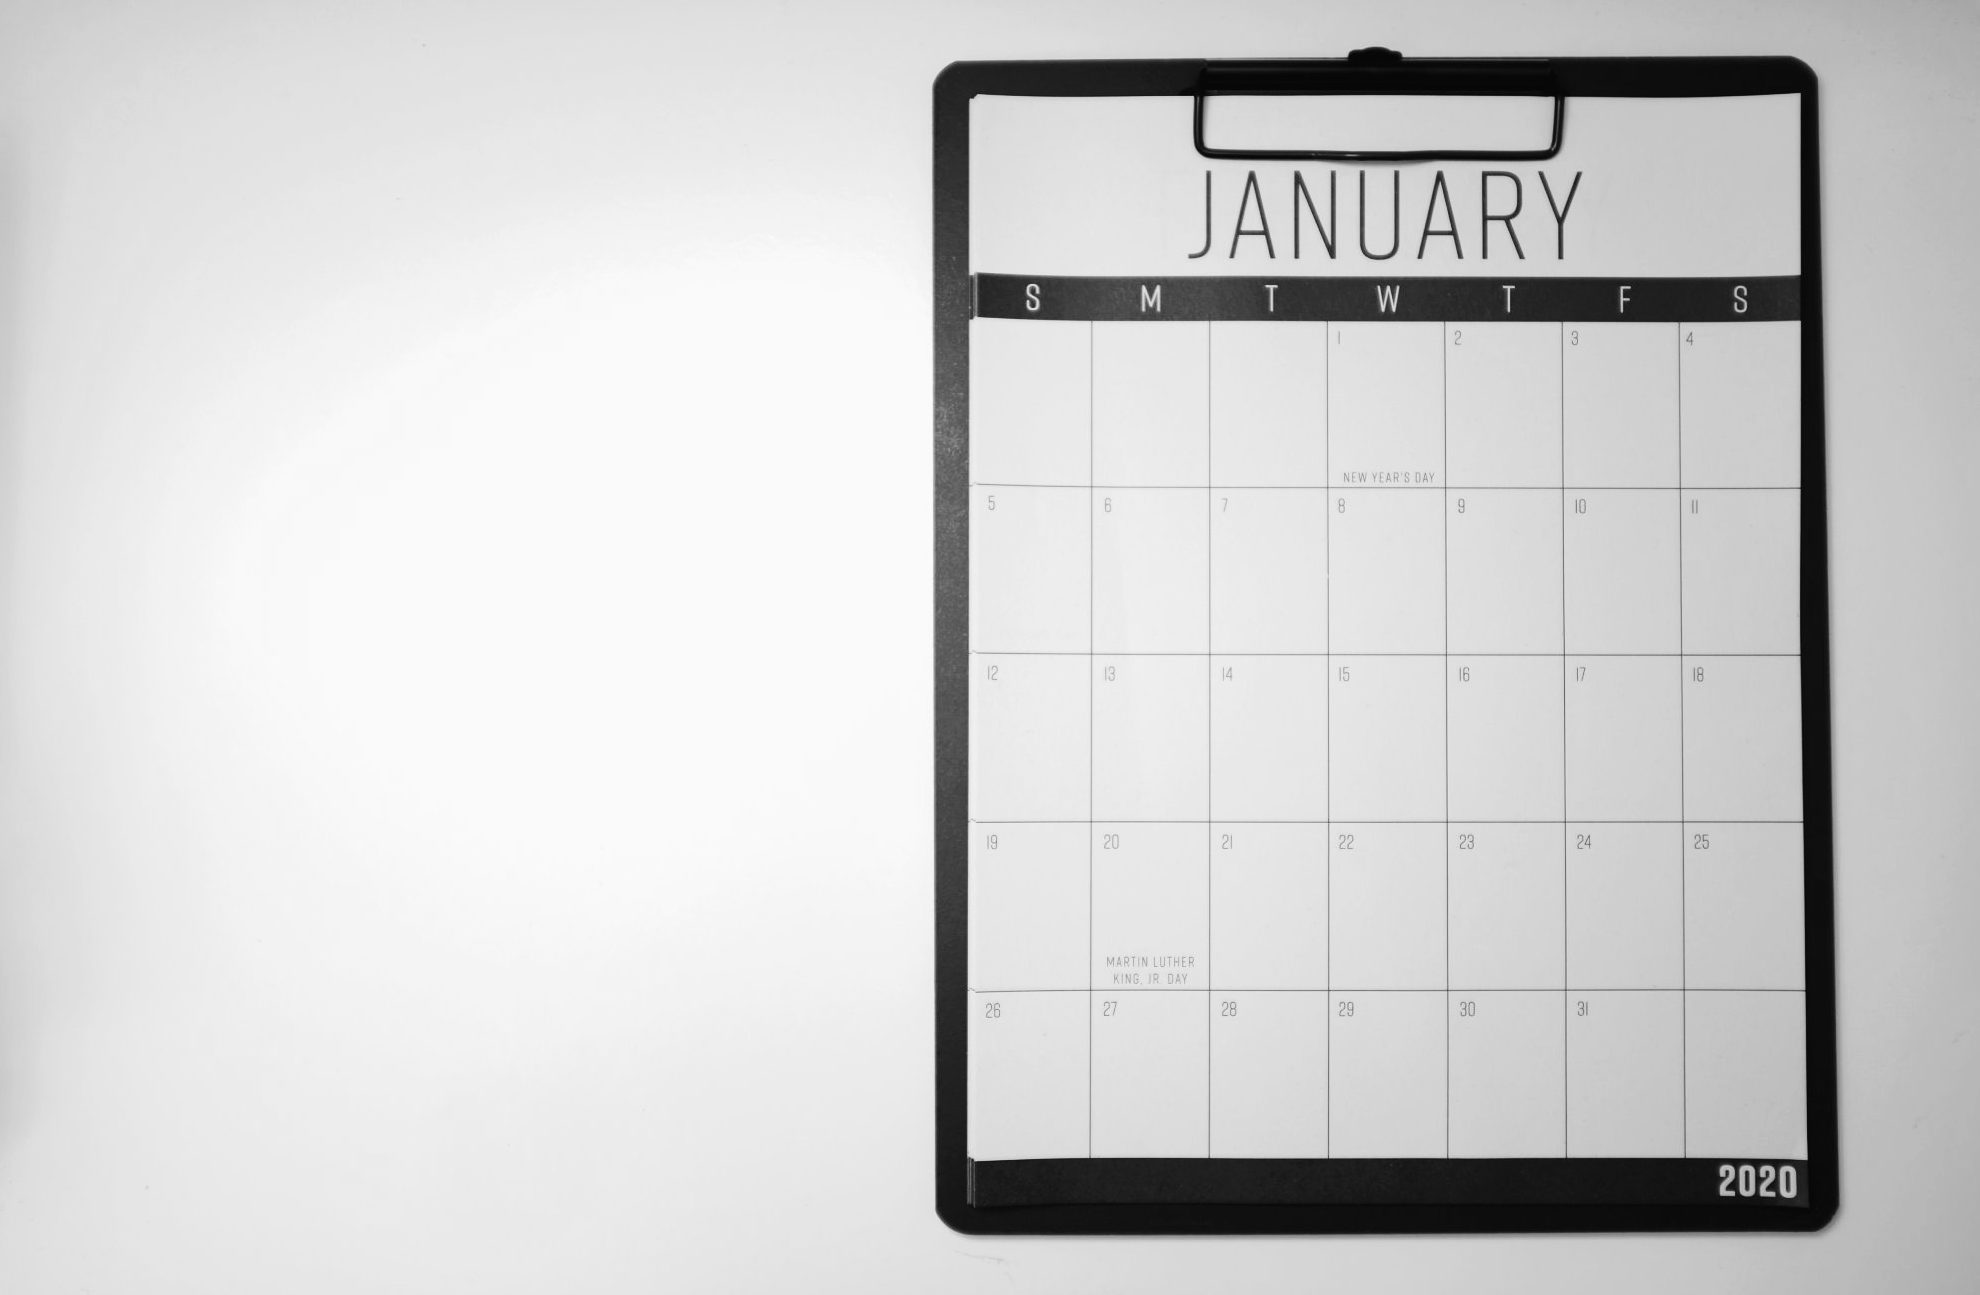 A calendar for January 2020 on a clipboard